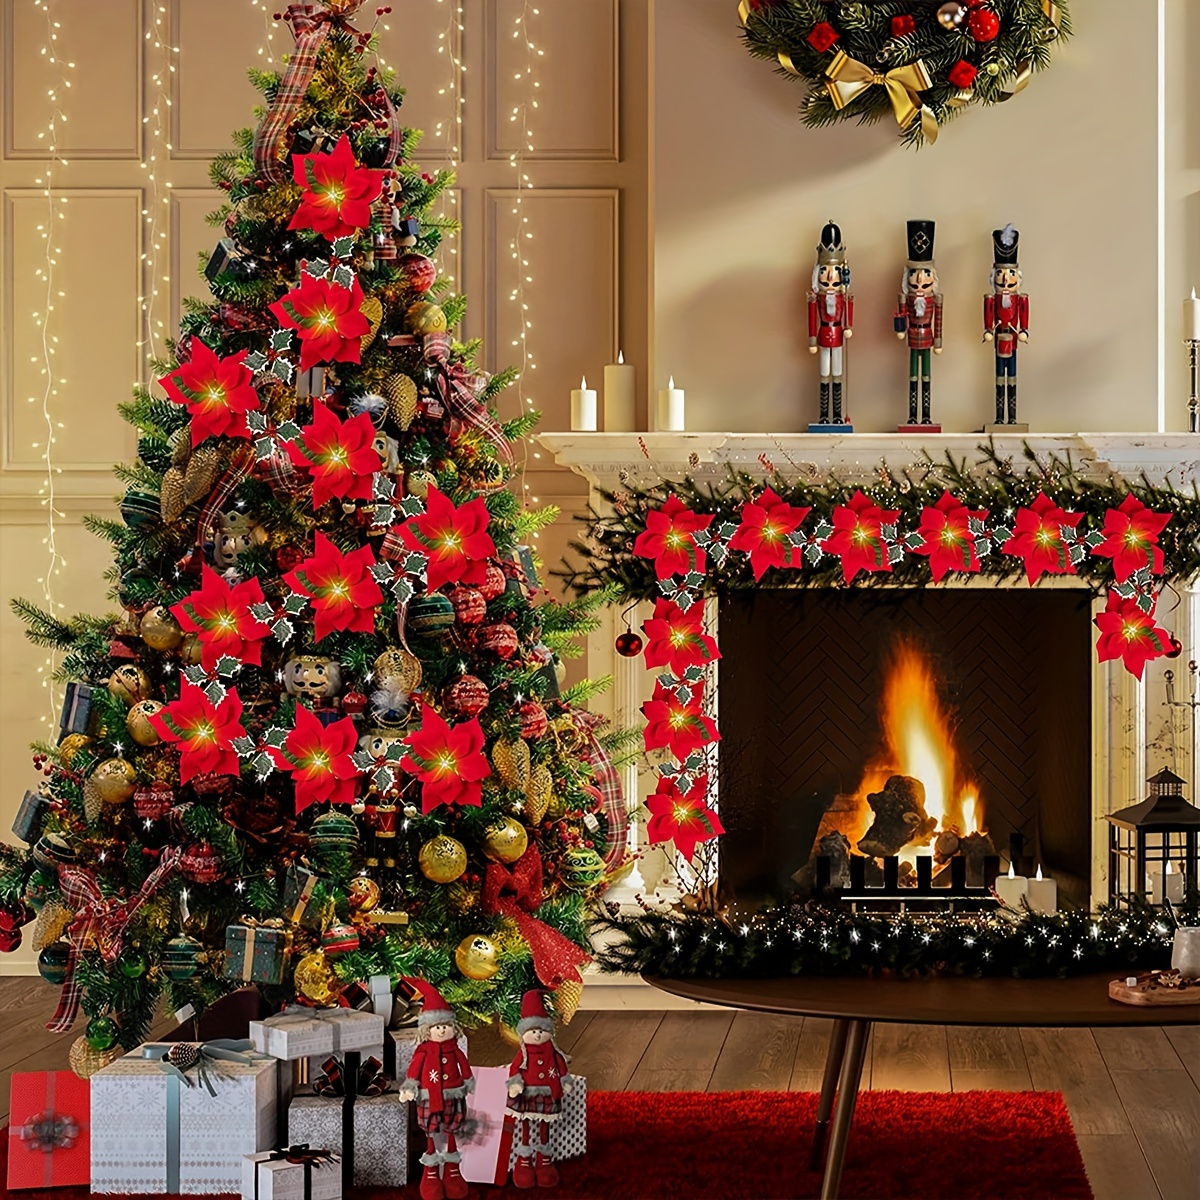 Guirlande de Noël Holiday Living intérieure avec poinsettias et